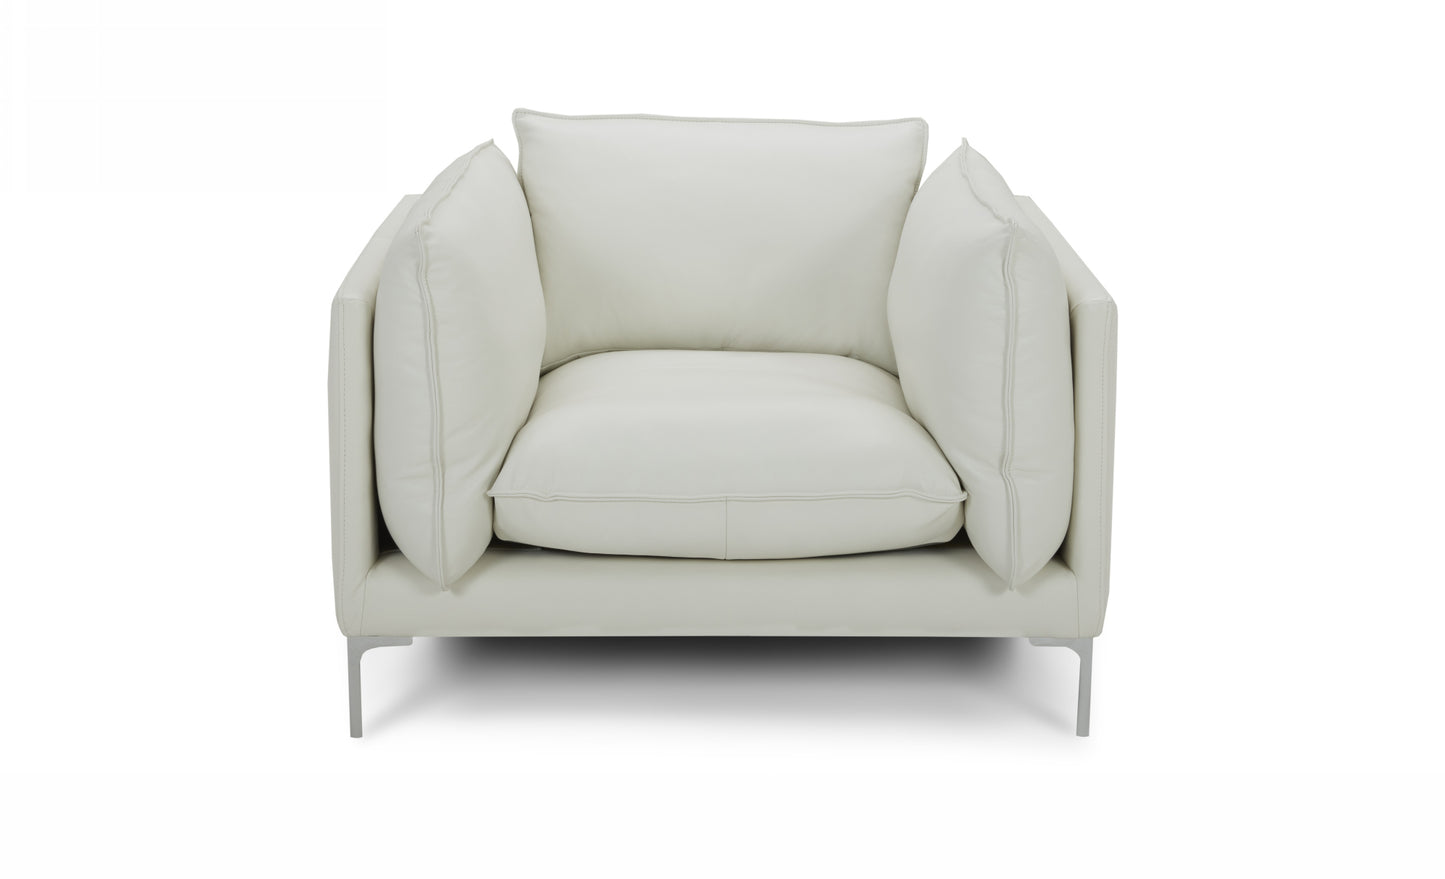 Divani Casa Harvest - Modern White Full Leather Chair-2